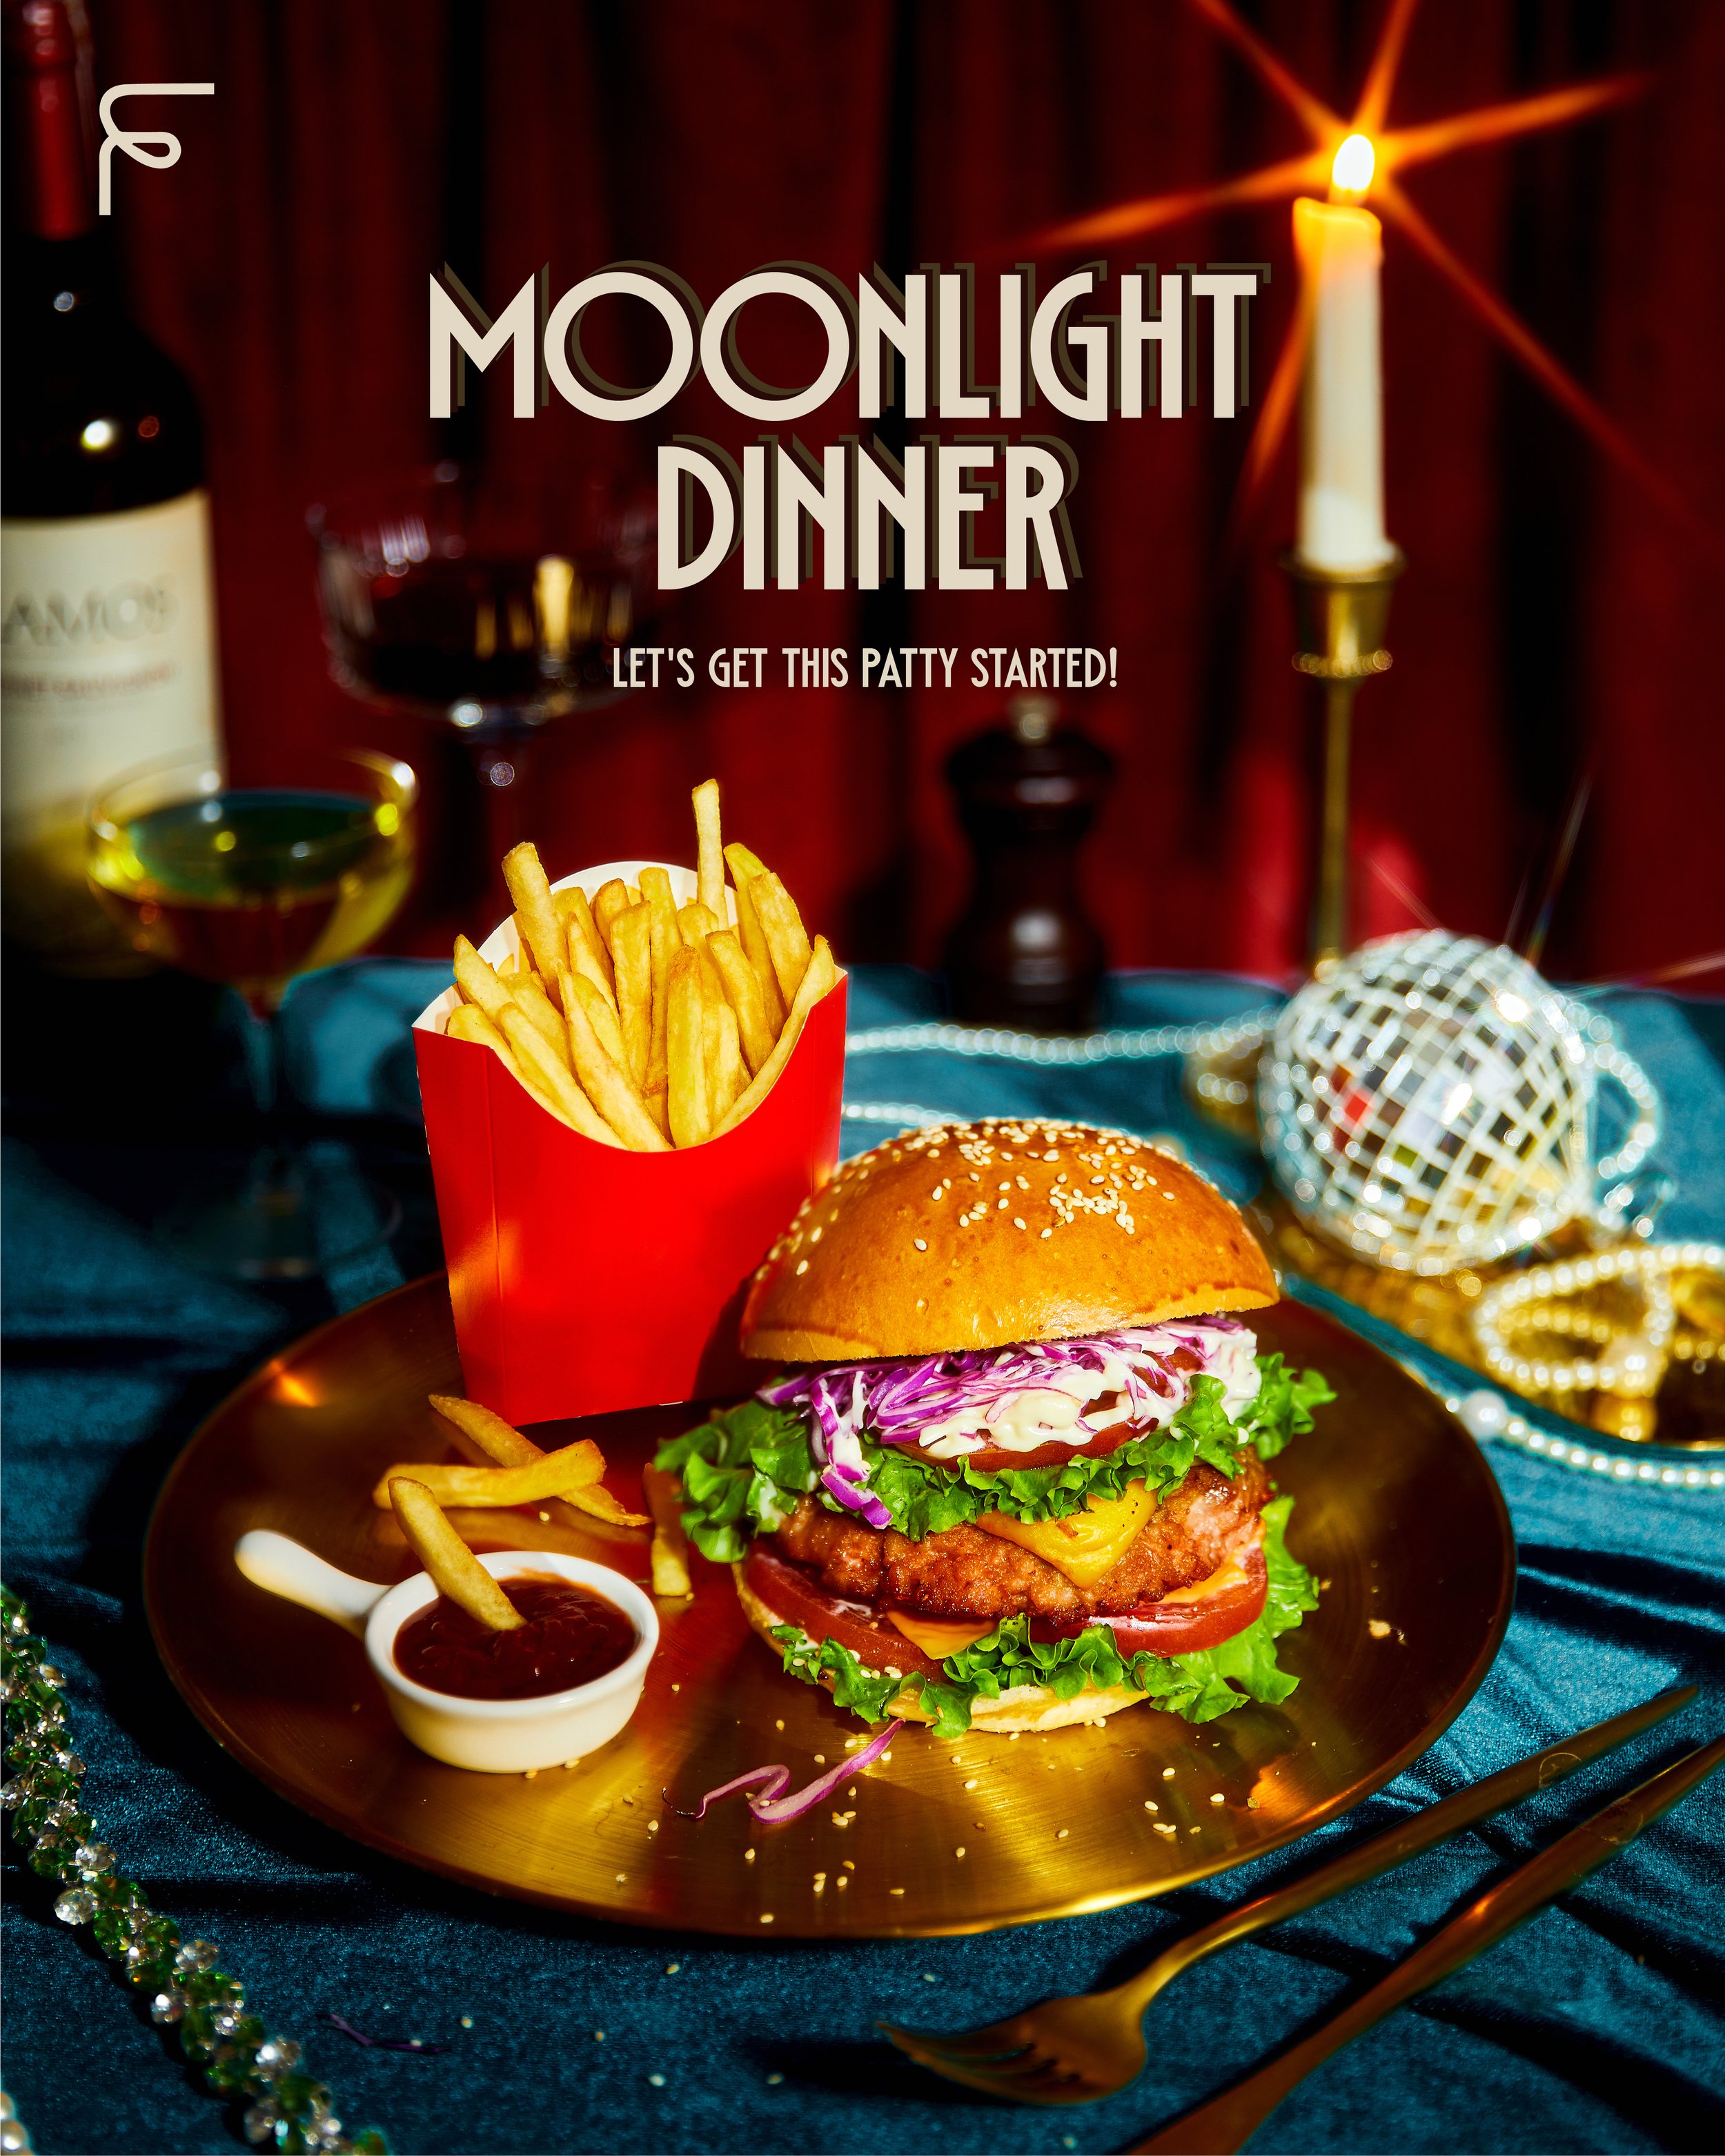 Moonlight dinner-01.jpg